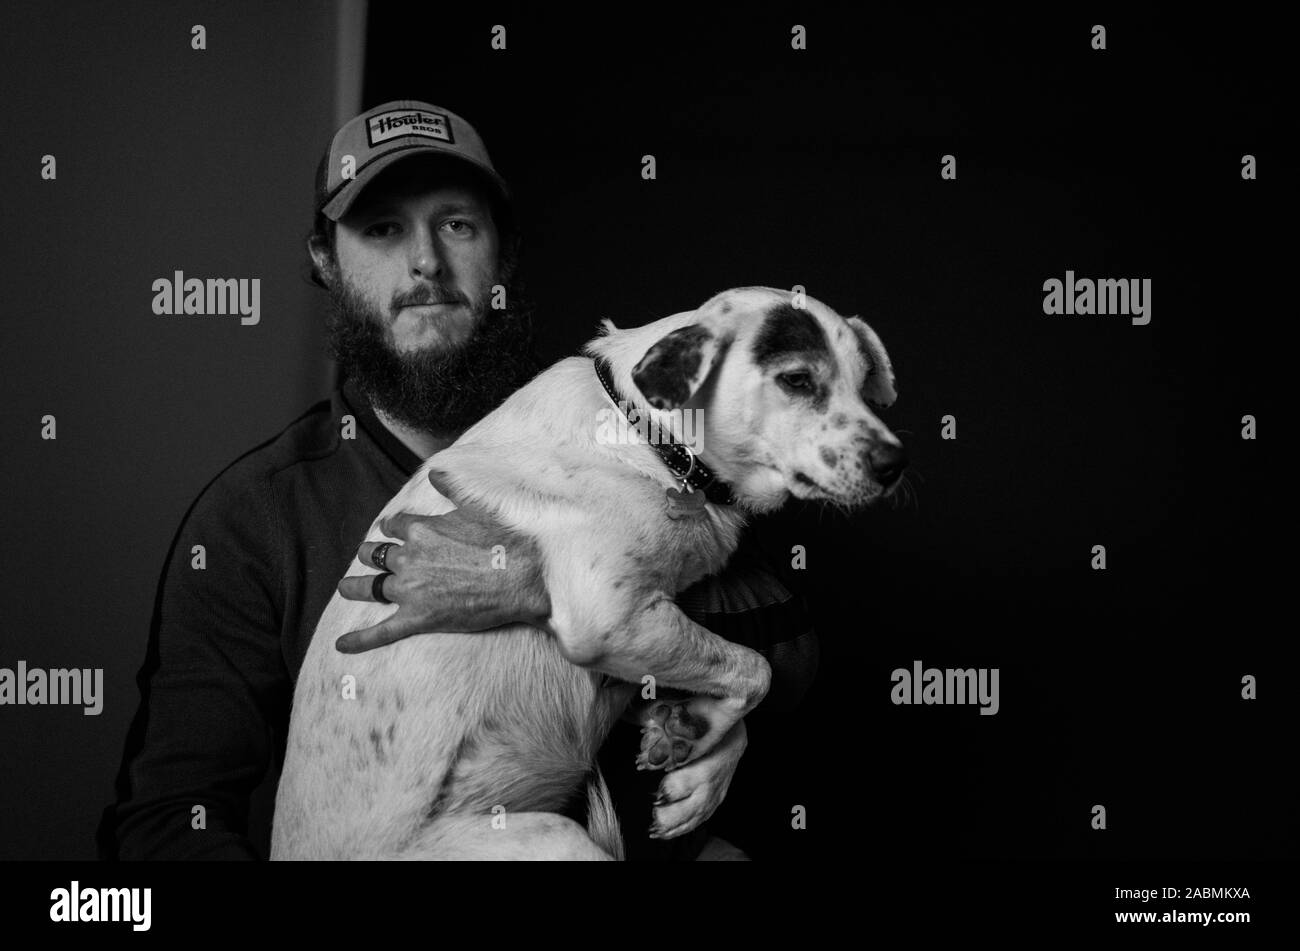 Jake le chien Banque de photographies et d'images à haute résolution - Alamy